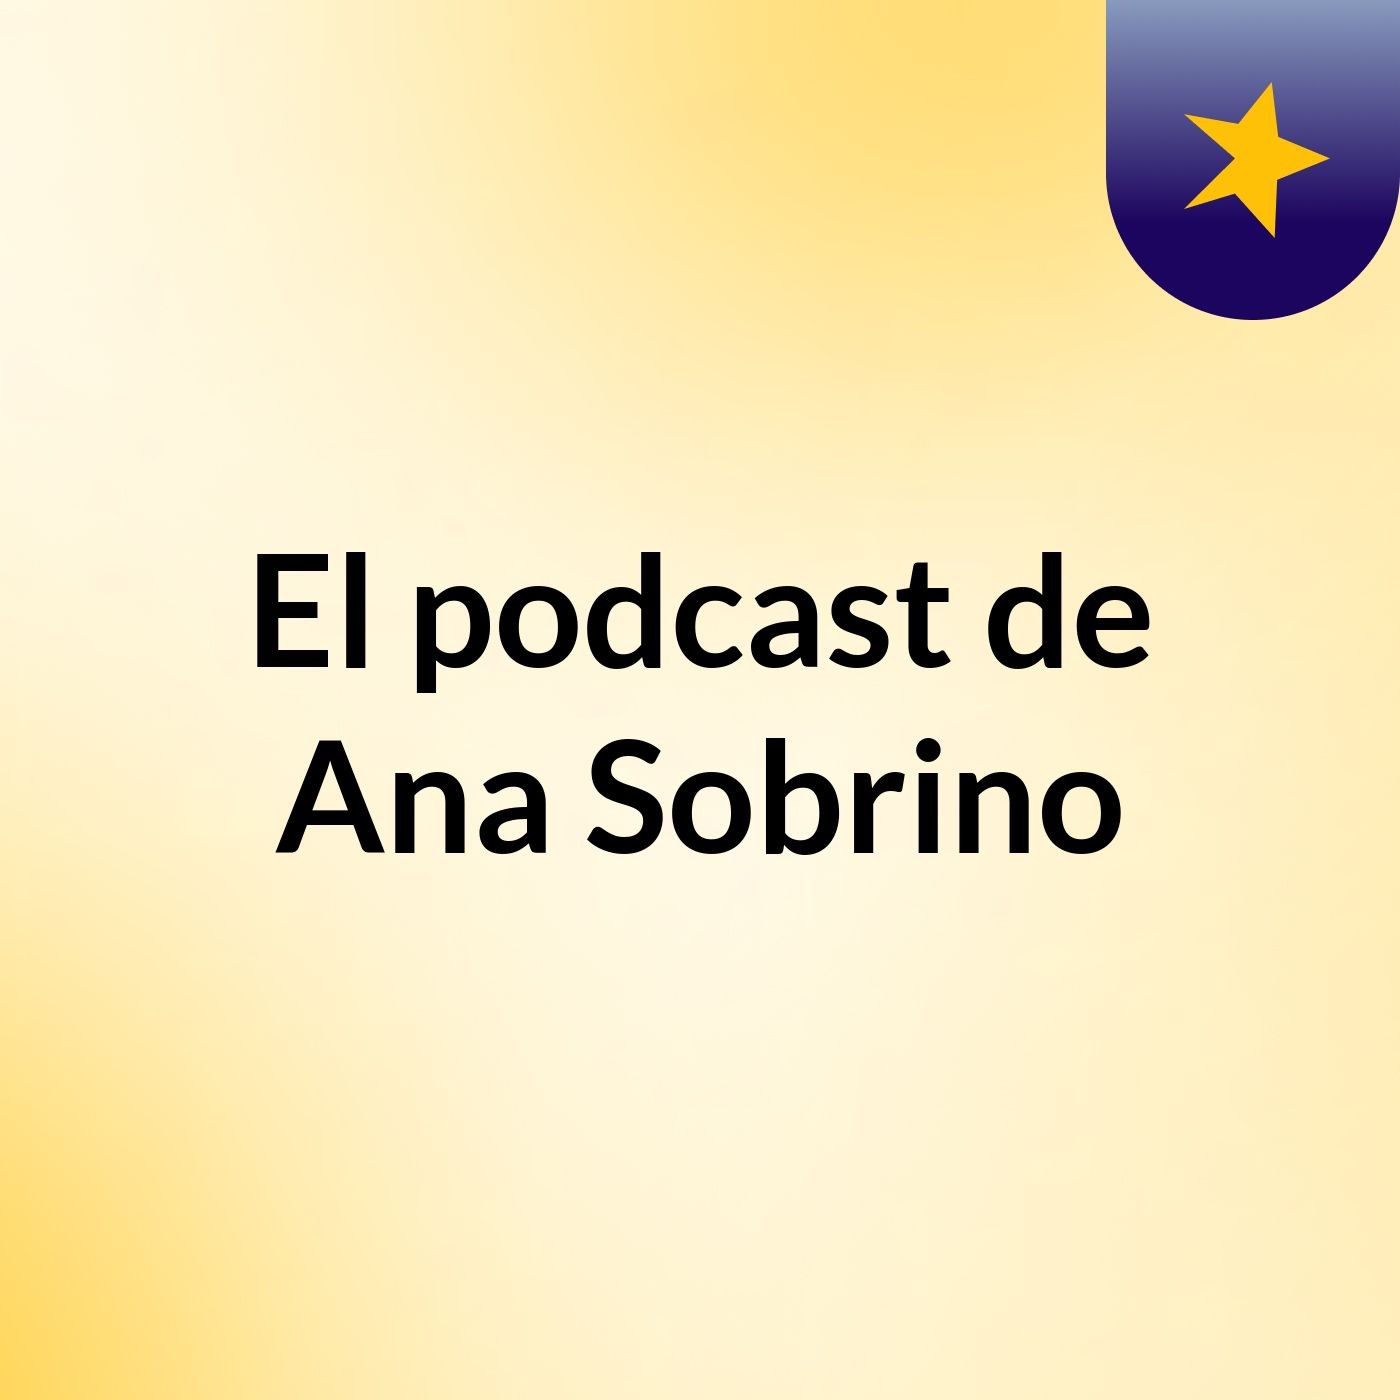 El podcast de Ana Sobrino